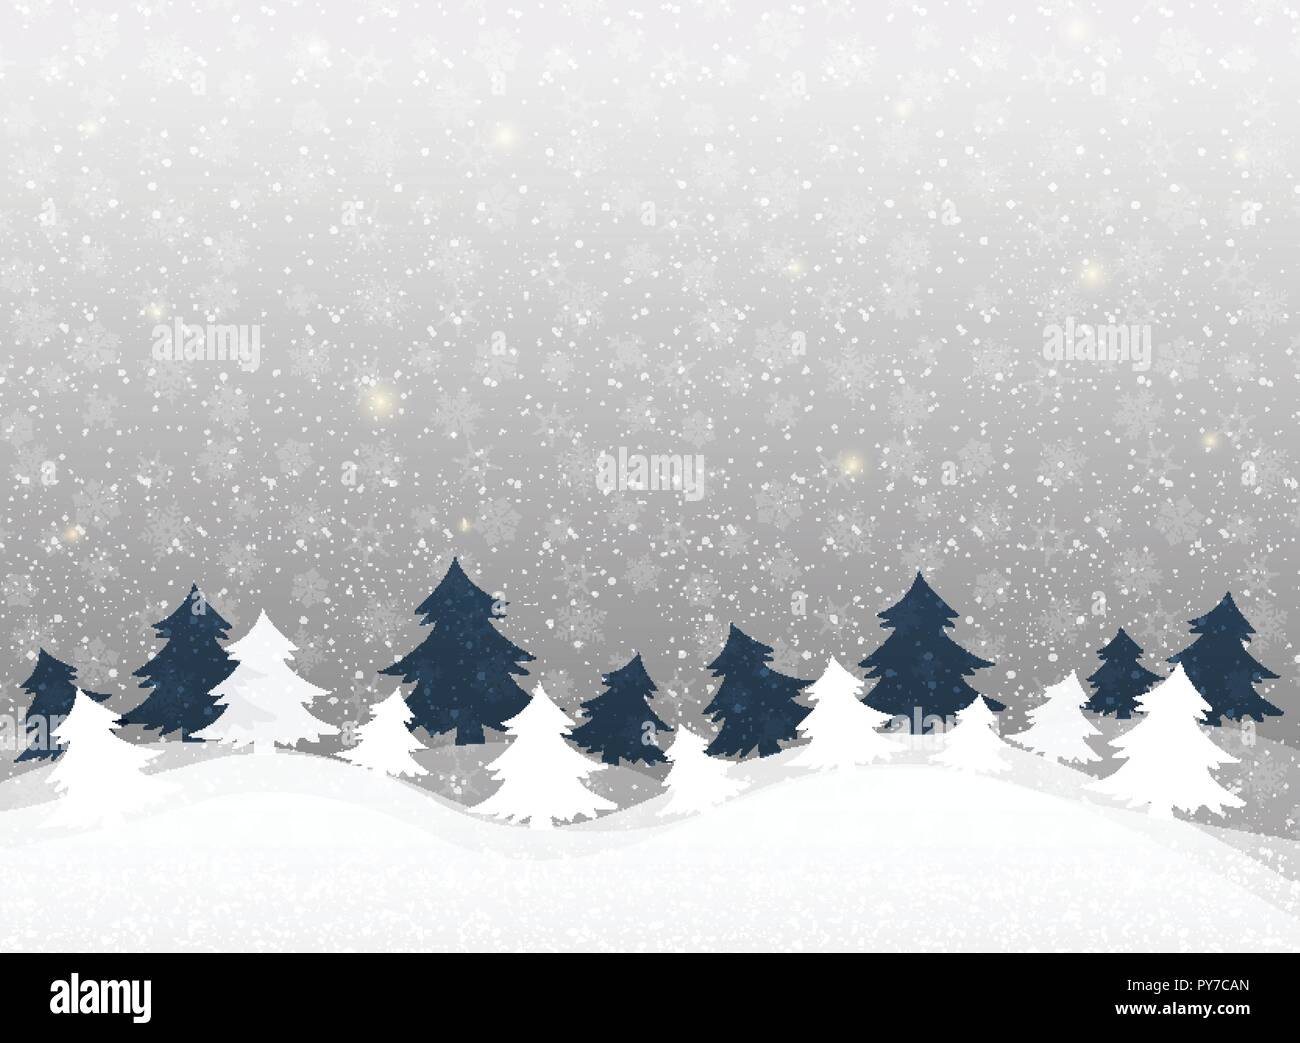 Weihnachten Hintergrund in klaren winter Schneeflocken Muster. illustration Vector EPS 10. Stock Vektor